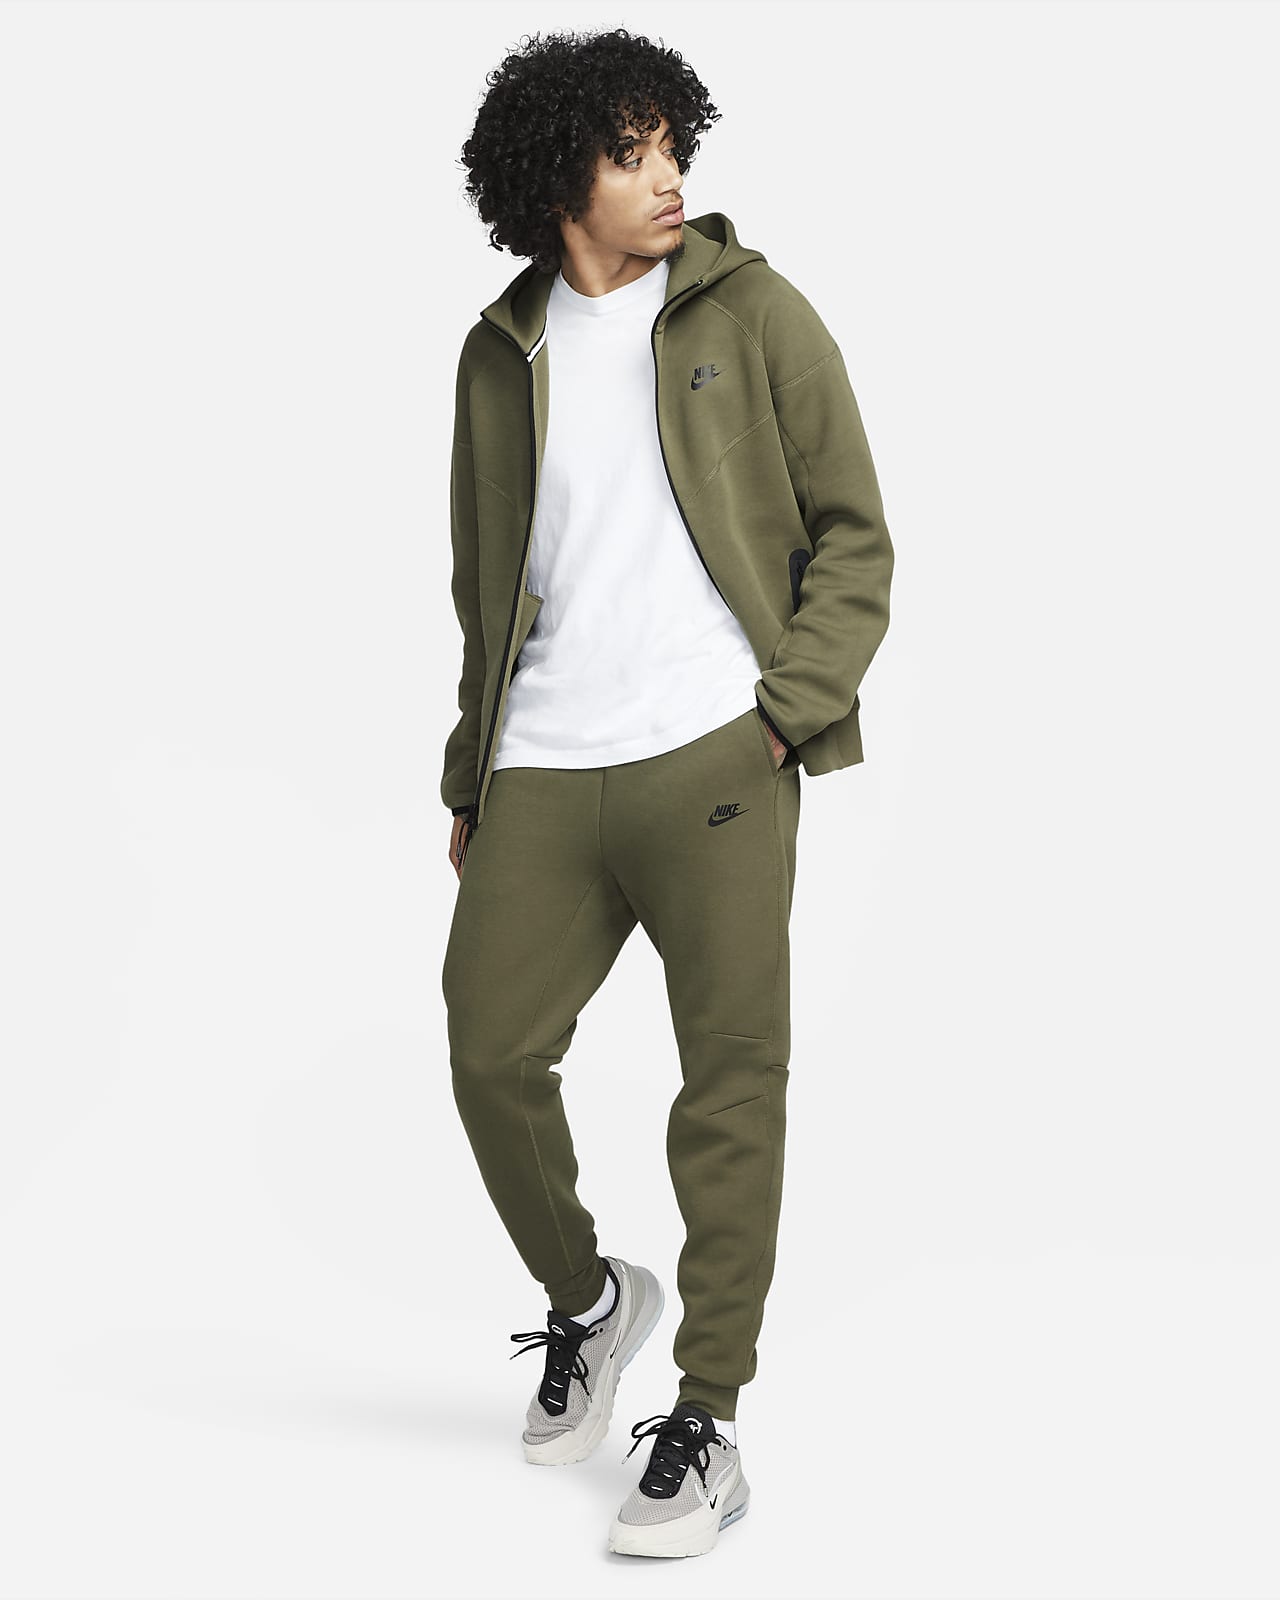 Tech Fleece Joggers & Sweatpants. Nike UK